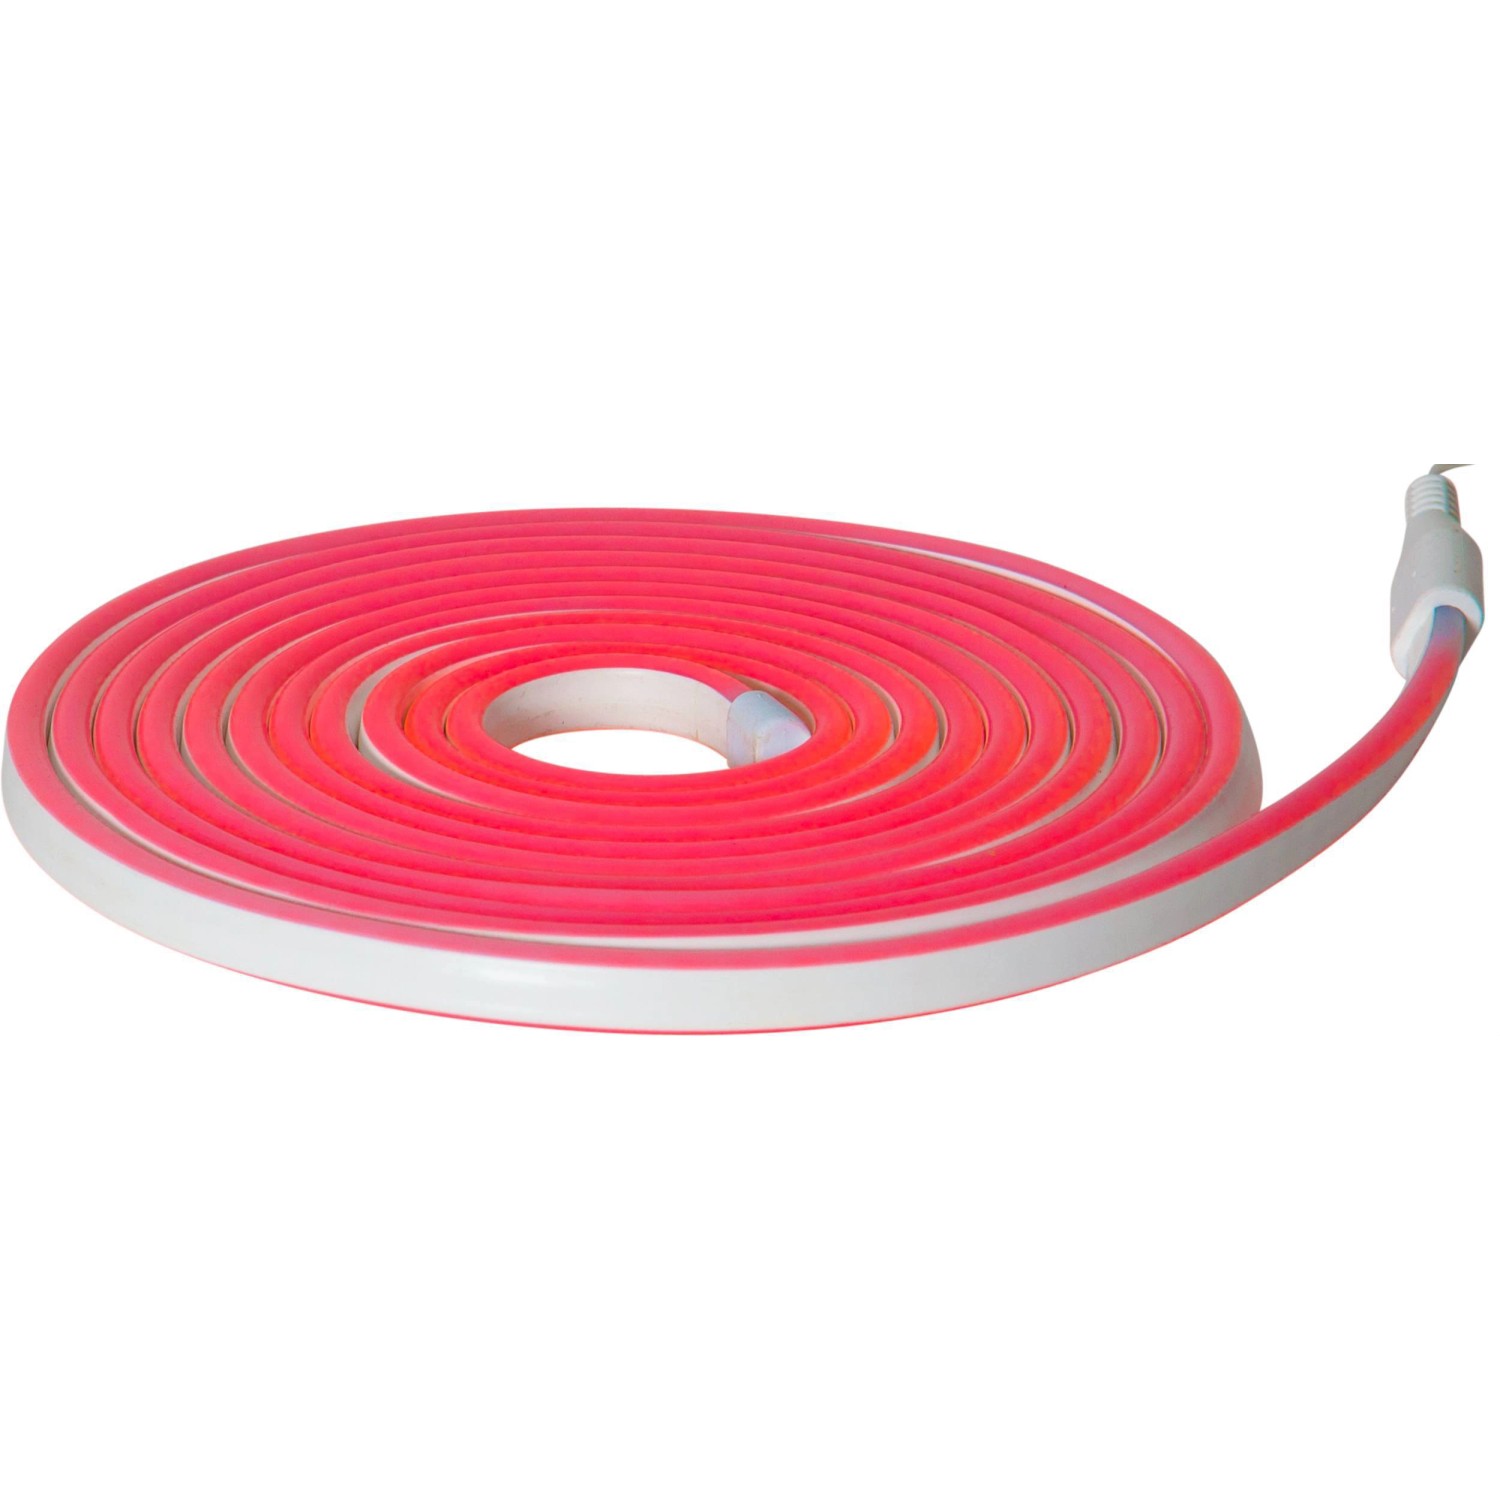 Eglo LED-Leuchtband Flatneonled Rot 500 cm